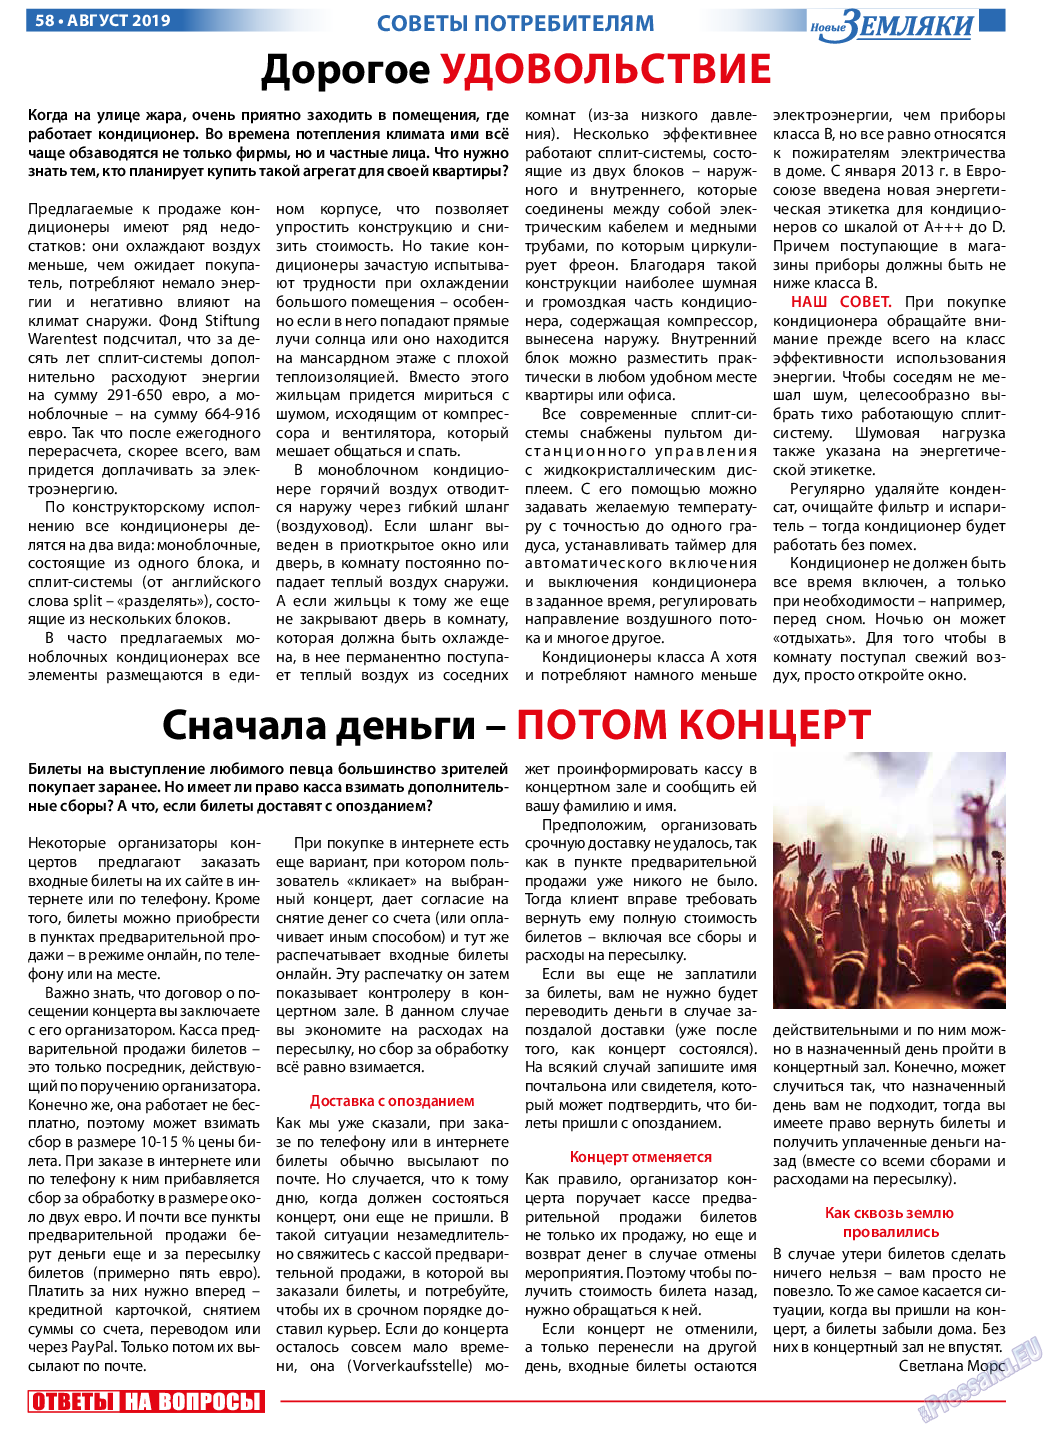 Новые Земляки, газета. 2019 №8 стр.58